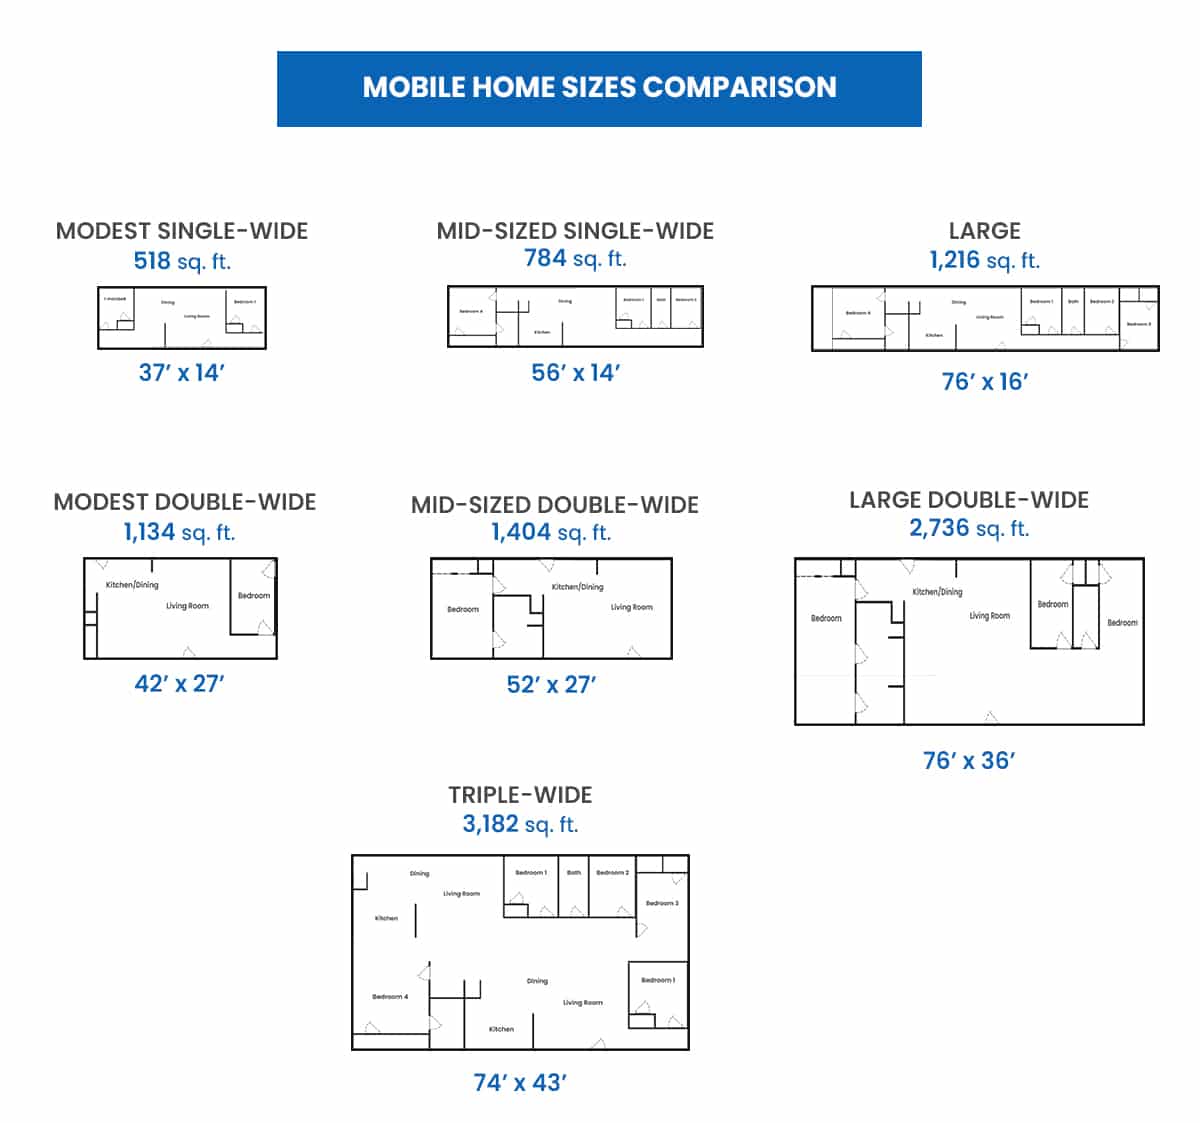 Mobile home sizes comparison